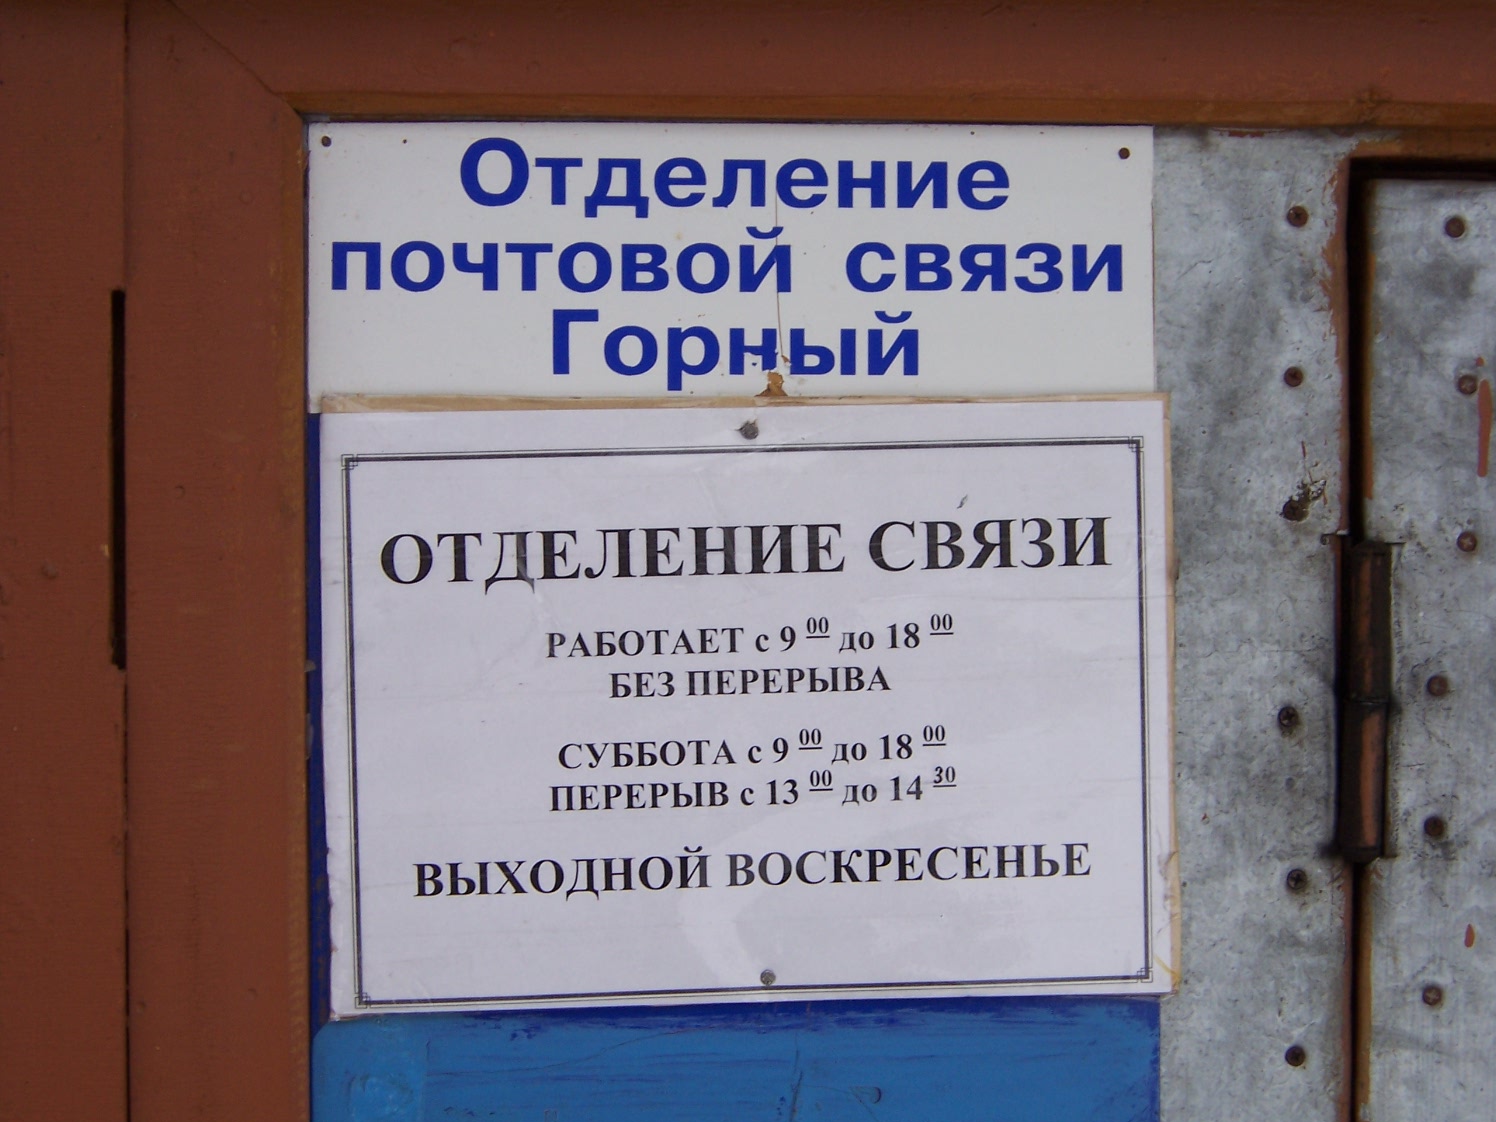 ФАСАД, отделение почтовой связи 672900, Забайкальский край, Горный